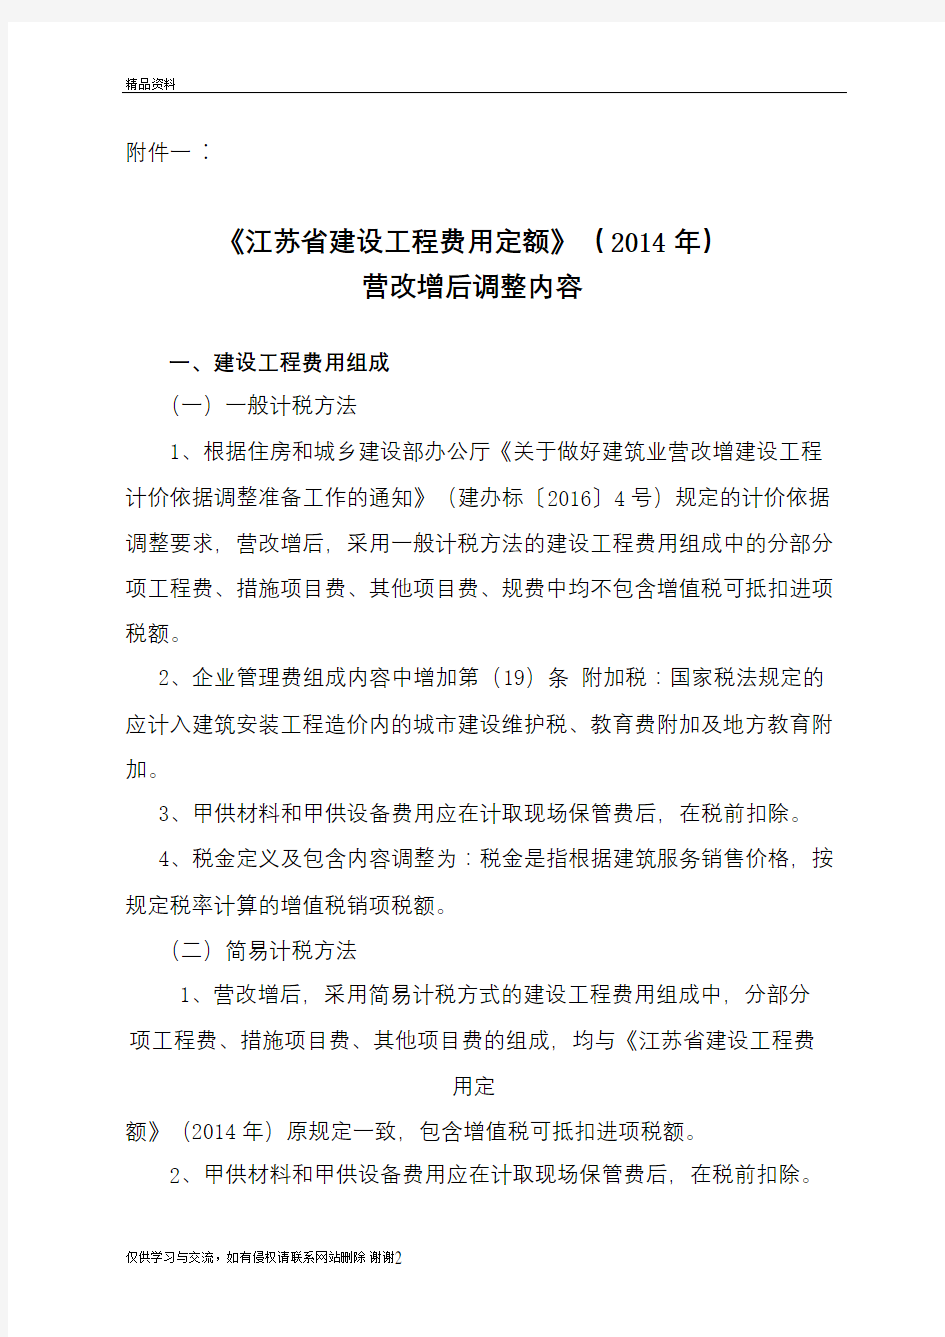 《江苏省建设工程费用定额》()营改增后调整内容教程文件